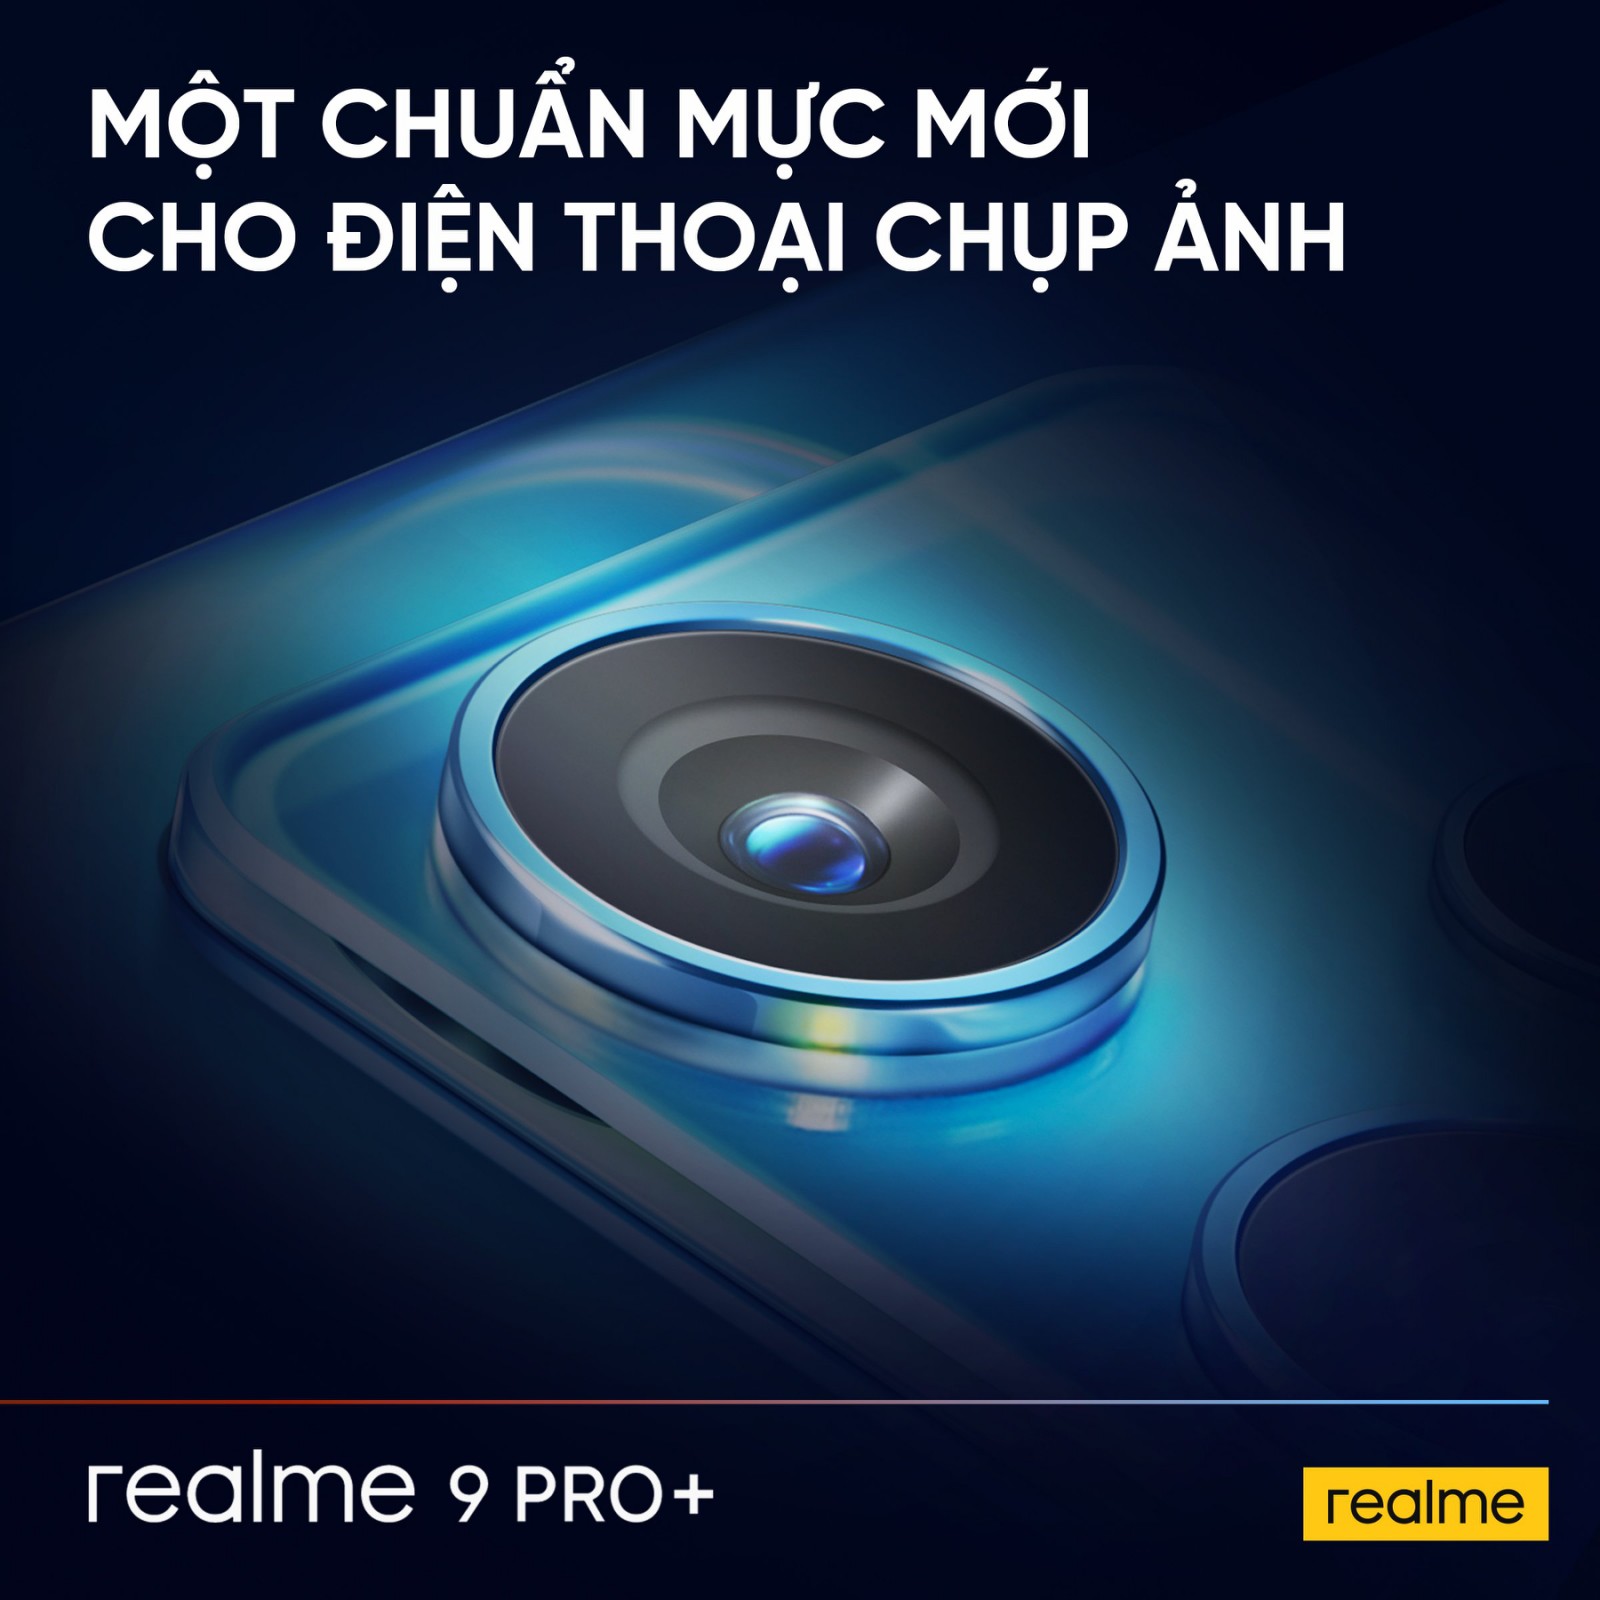 Realme 9 Pro Series có gì mới - Hiệu suất 5G mạnh nhất và camera chuyên nghiệp trong phân khúc tầm trung